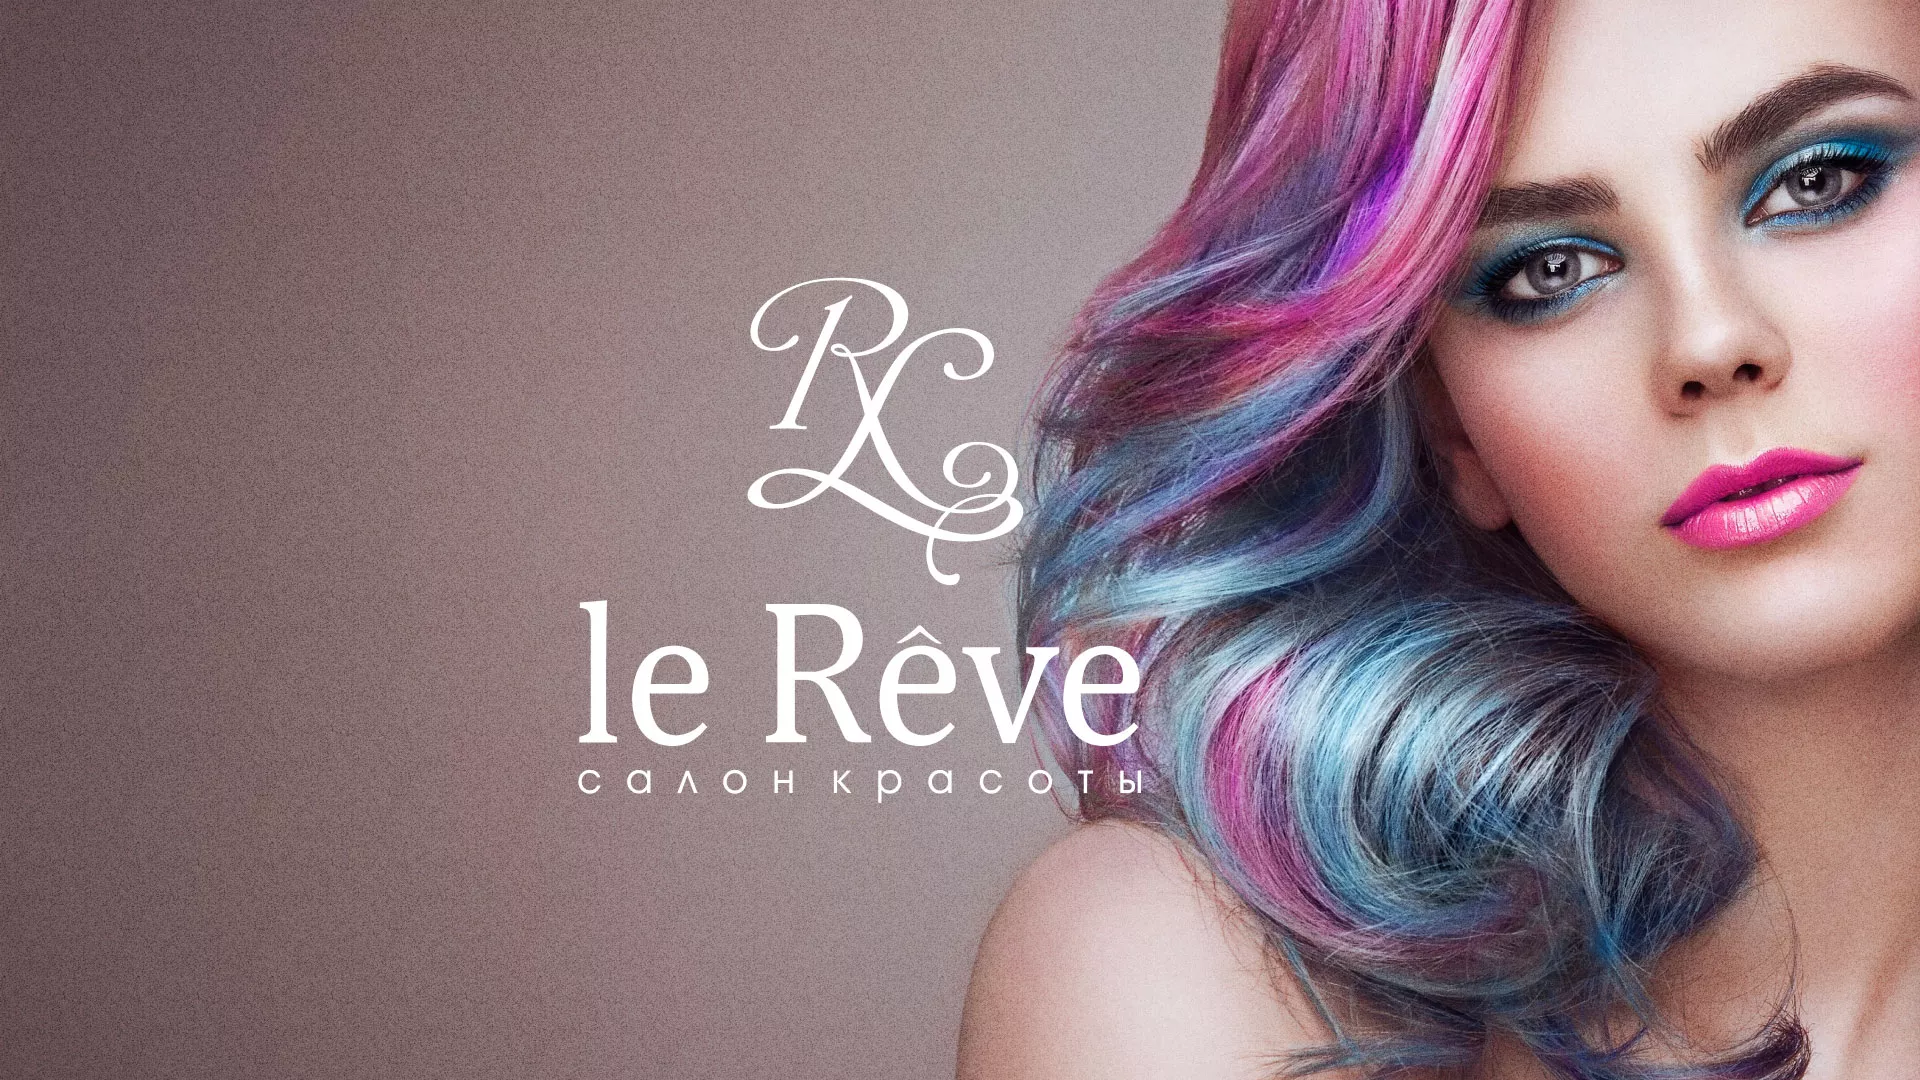 Создание сайта для салона красоты «Le Reve» в Николаевске